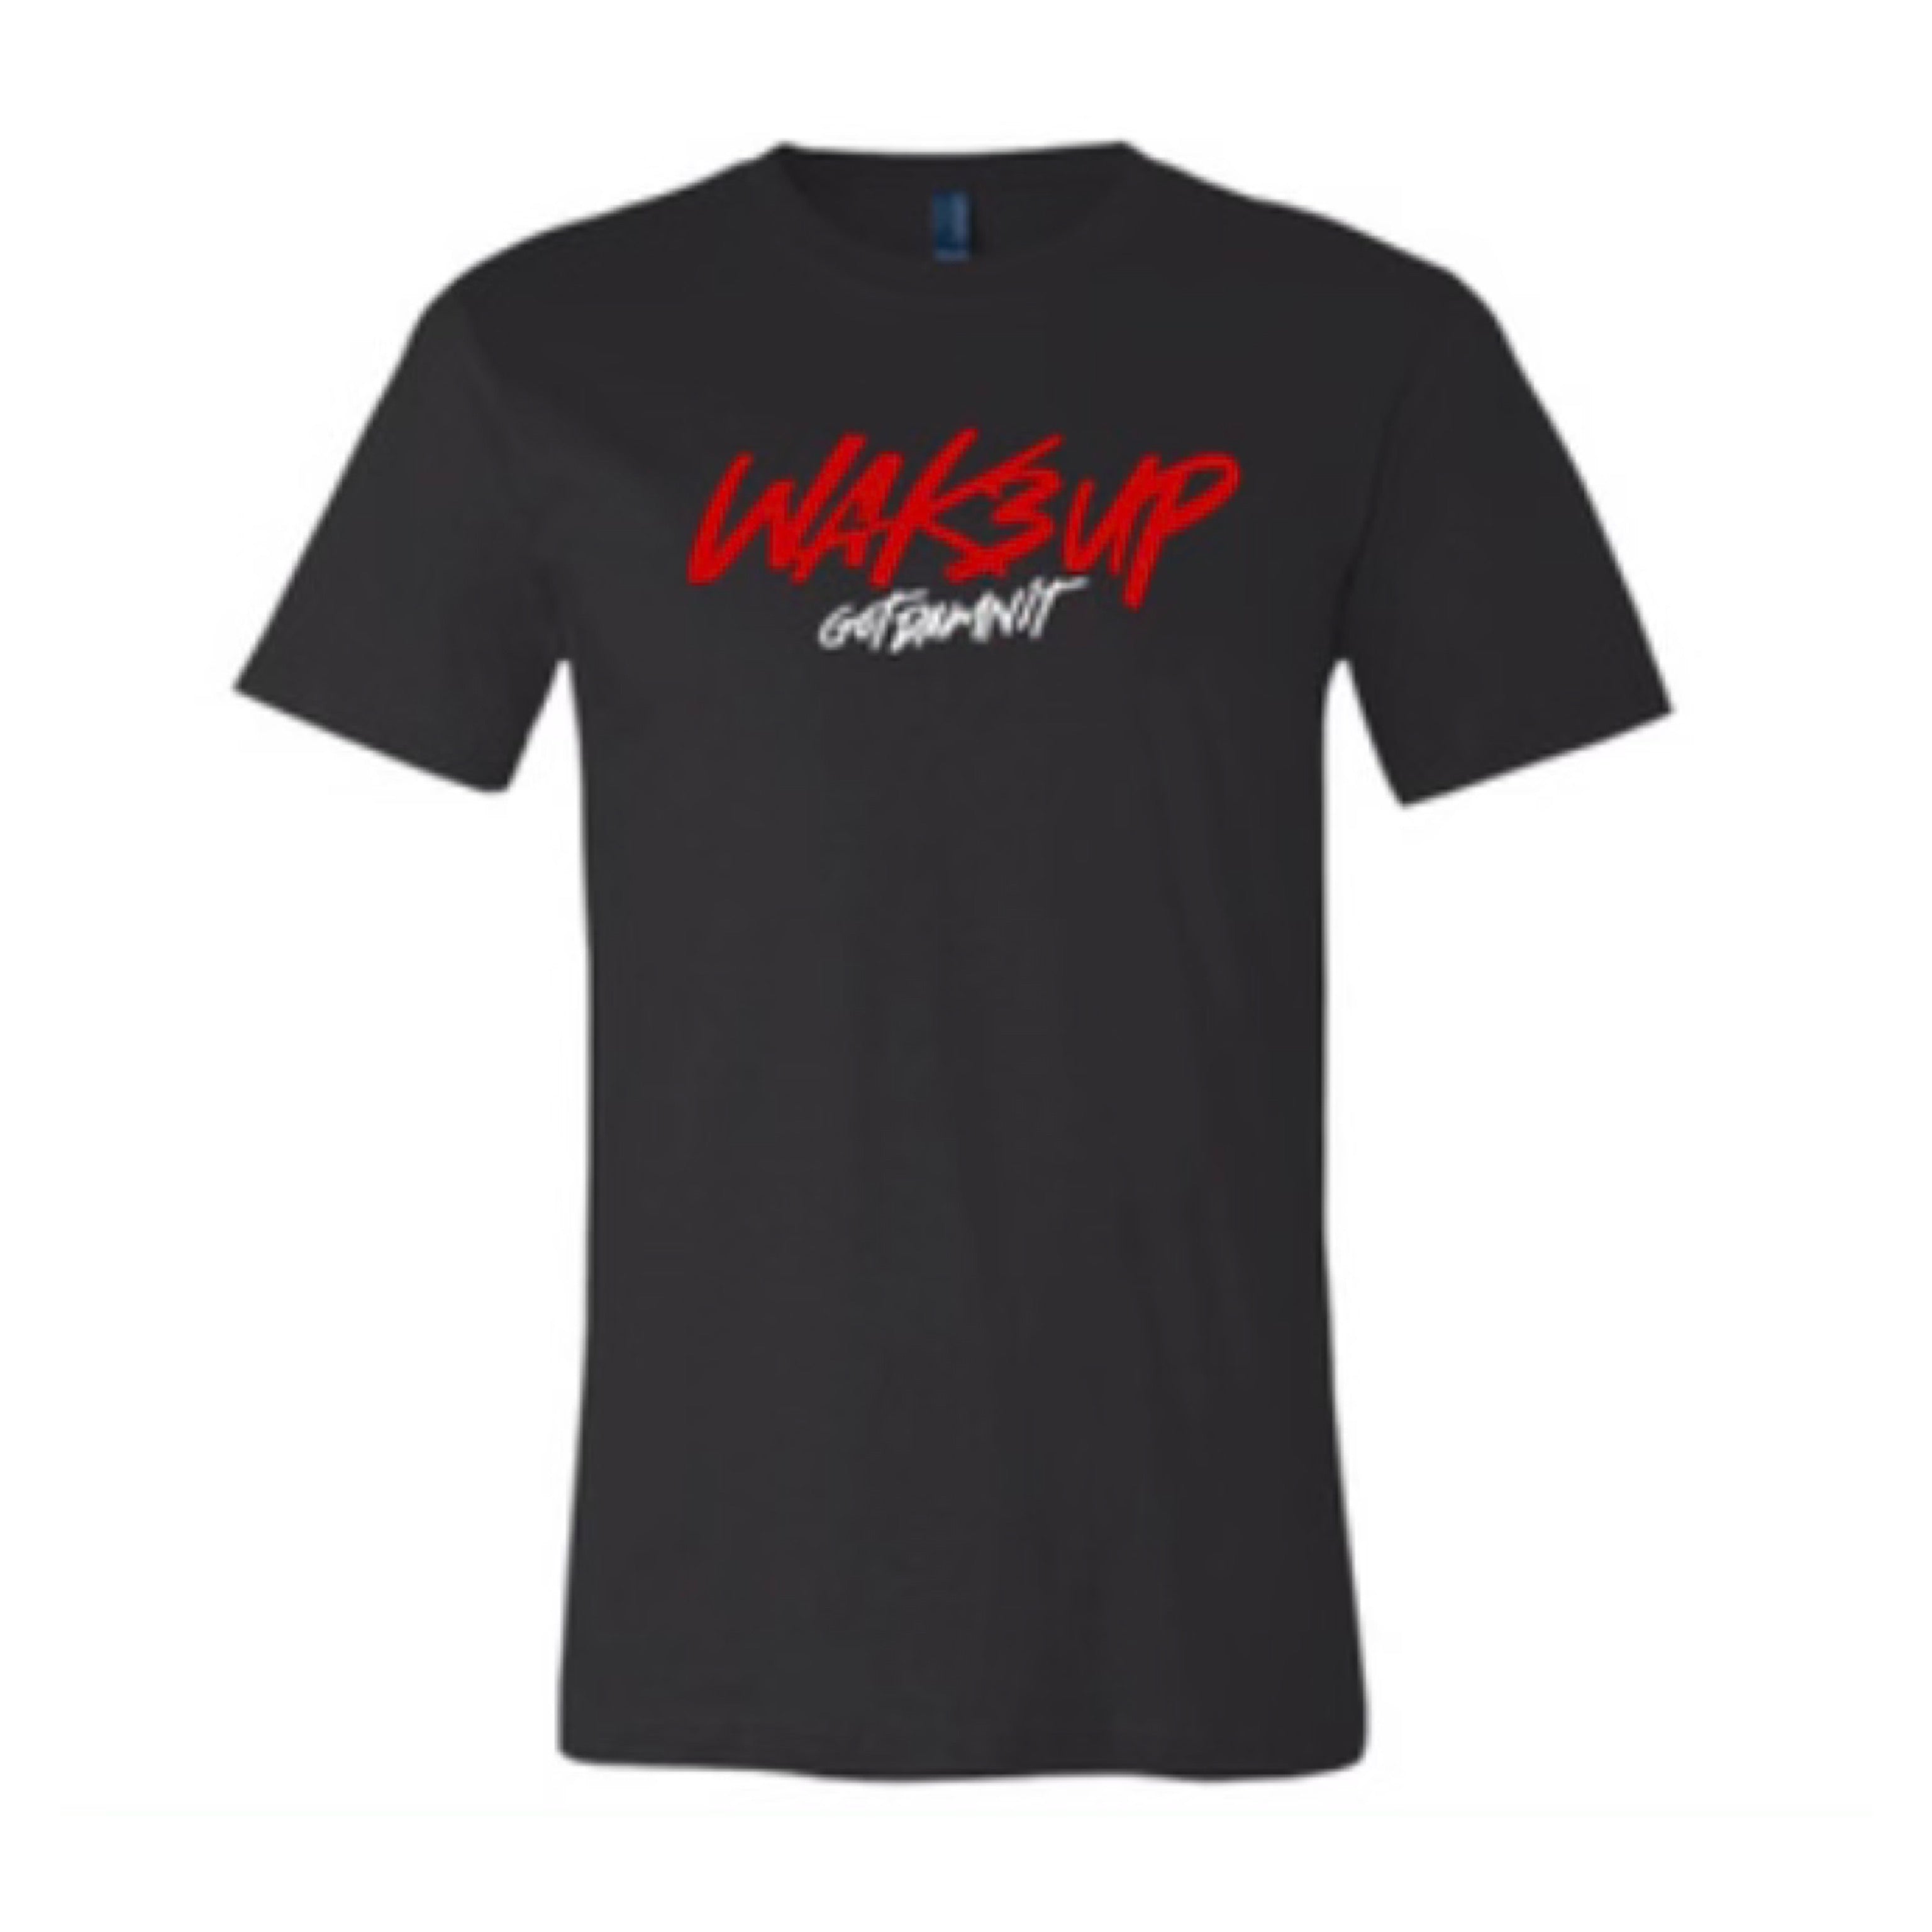 WAK3 UP T-Shirts